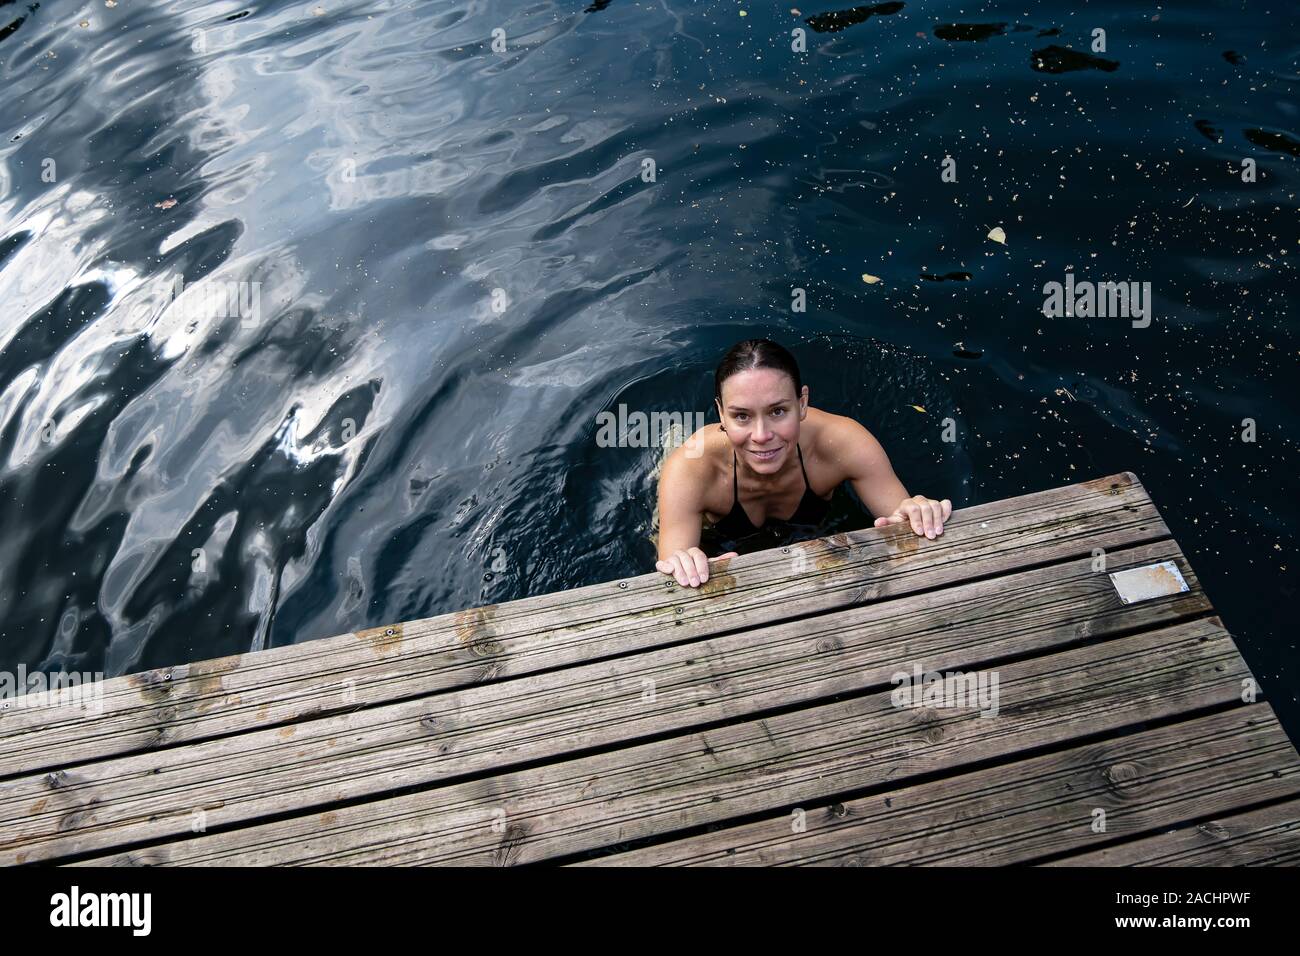 Lächelnde Frau badet in einem klaren See, sie hält ihre Hände auf den Rand eines hölzernen Pier und sieht in die Kamera. Stockfoto